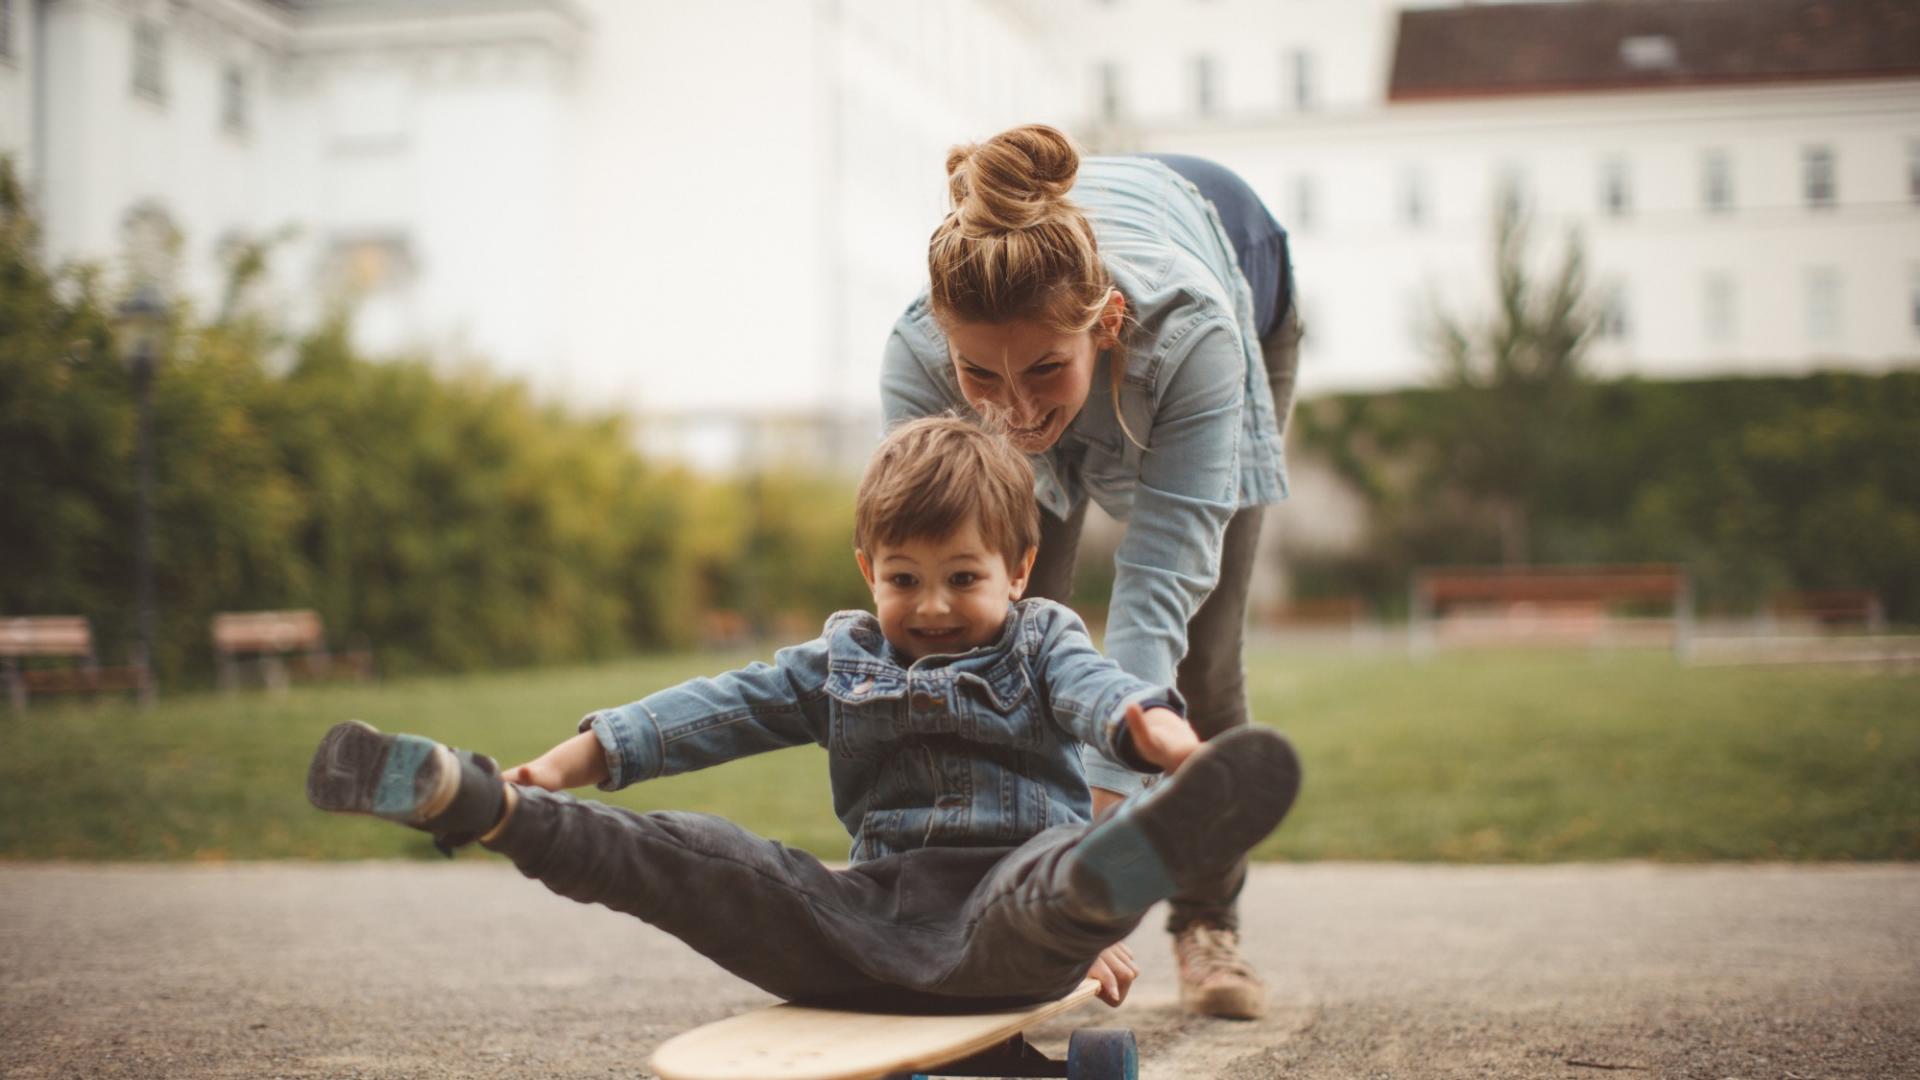 Ein kleiner Junge sitzt auf einem Skateboard und wird von einer Frau angeschubst